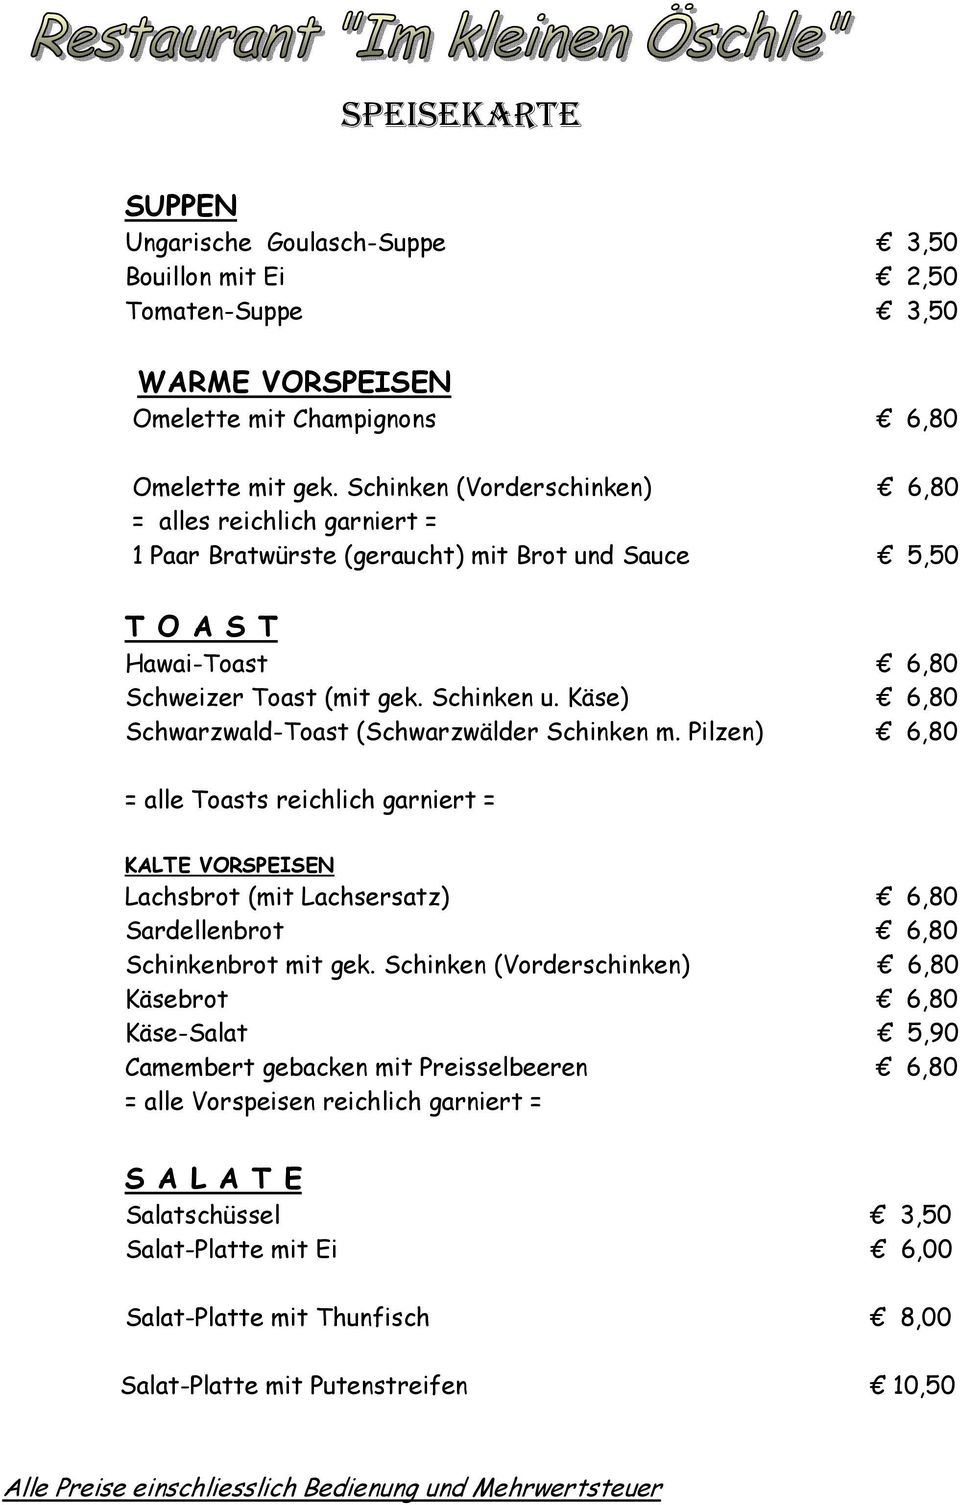 Käse) 6,80 Schwarzwald-Toast (Schwarzwälder Schinken m. Pilzen) 6,80 = alle Toasts reichlich garniert = KALTE VORSPEISEN Lachsbrot (mit Lachsersatz) 6,80 Sardellenbrot 6,80 Schinkenbrot mit gek.